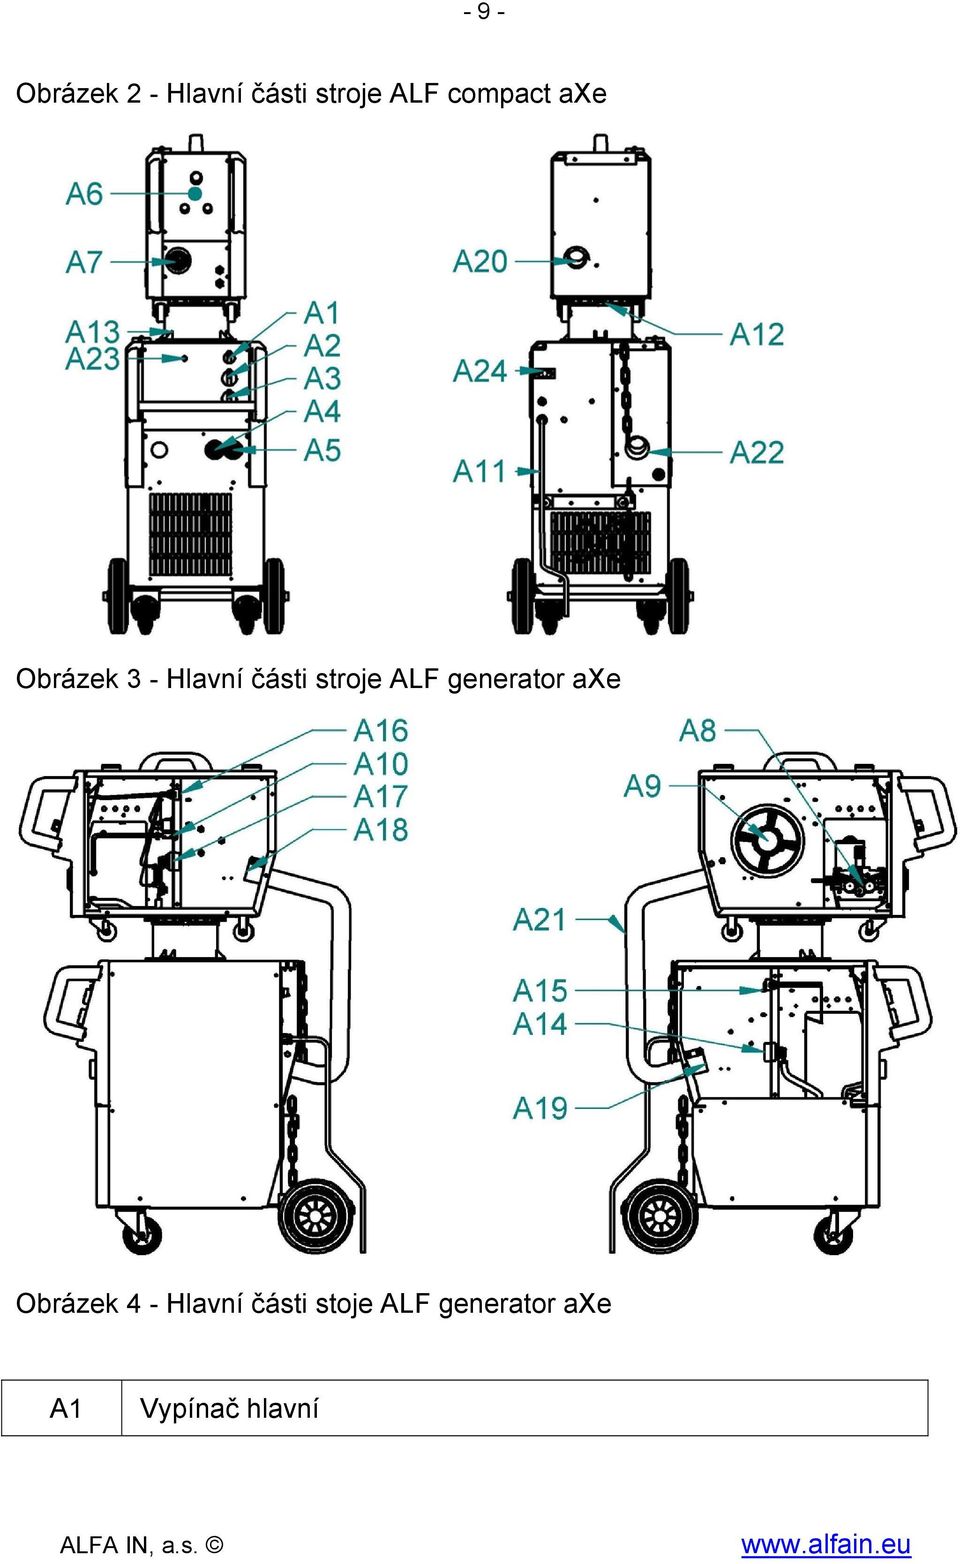 stroje ALF generator axe Obrázek 4 -